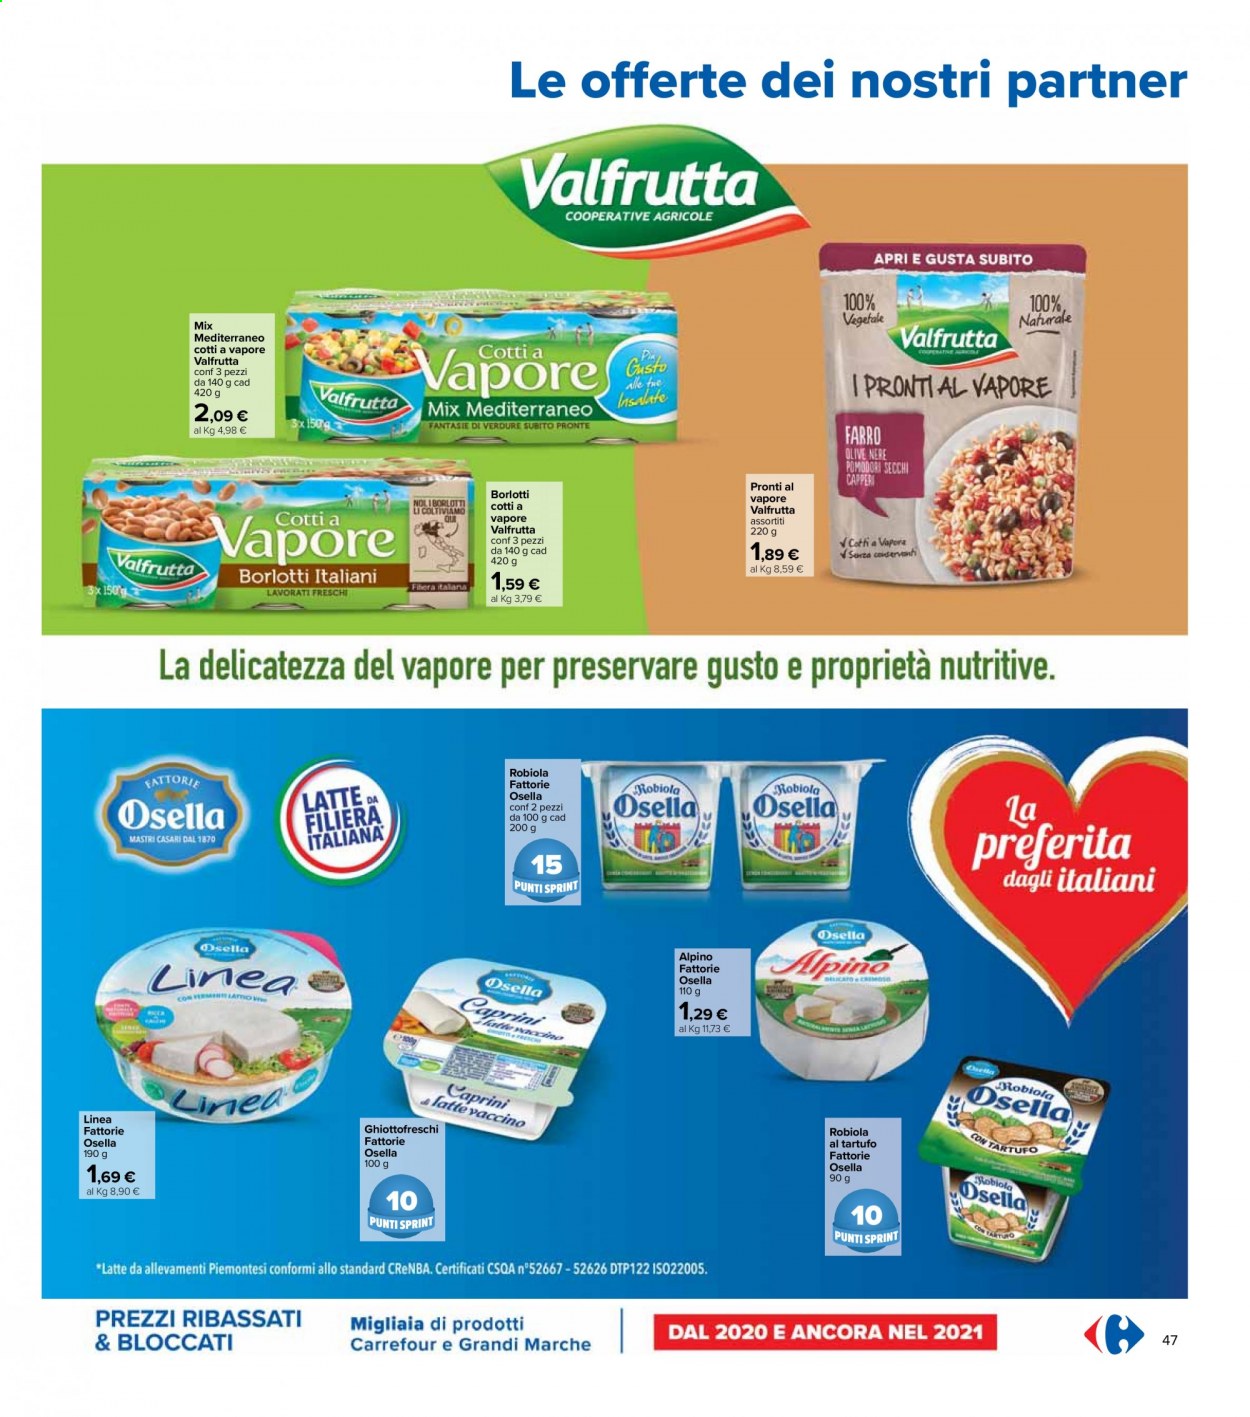 Volantino Carrefour - 6.4.2021 - 21.4.2021.